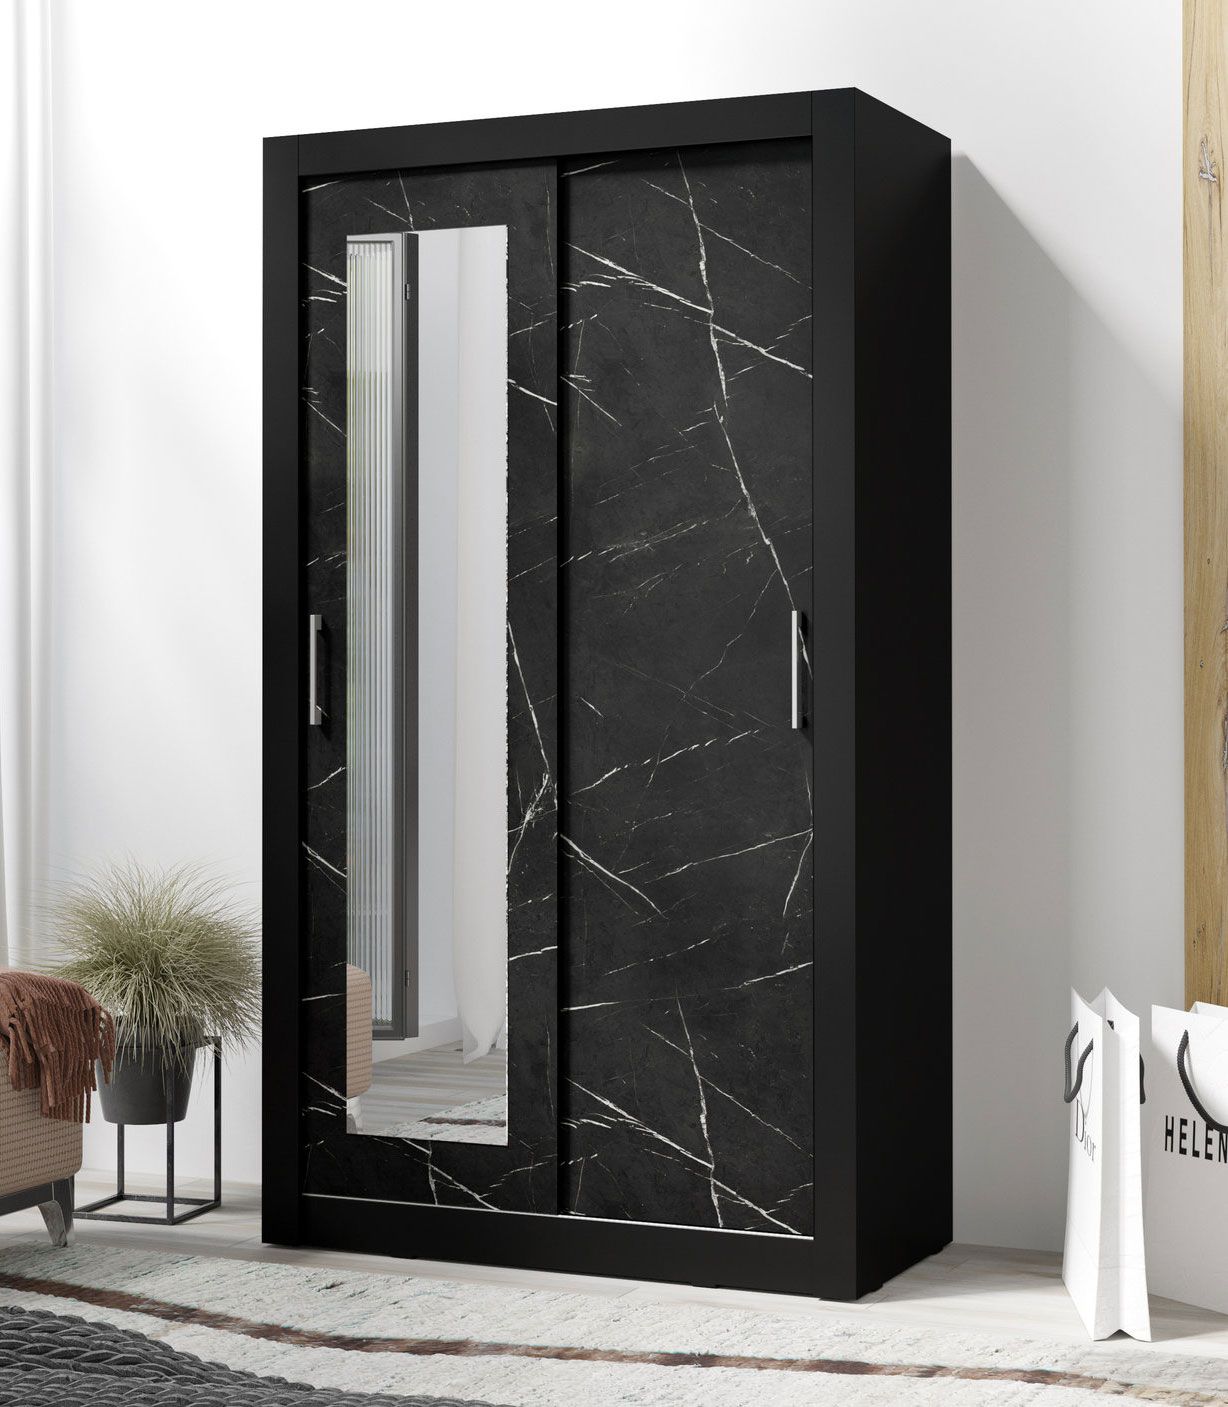 Armoire à portes coulissantes avec miroir Niel 23, Couleur : Noir / Marbre Noir - Dimensions : 215 x 120 x 60 cm (H x L x P)